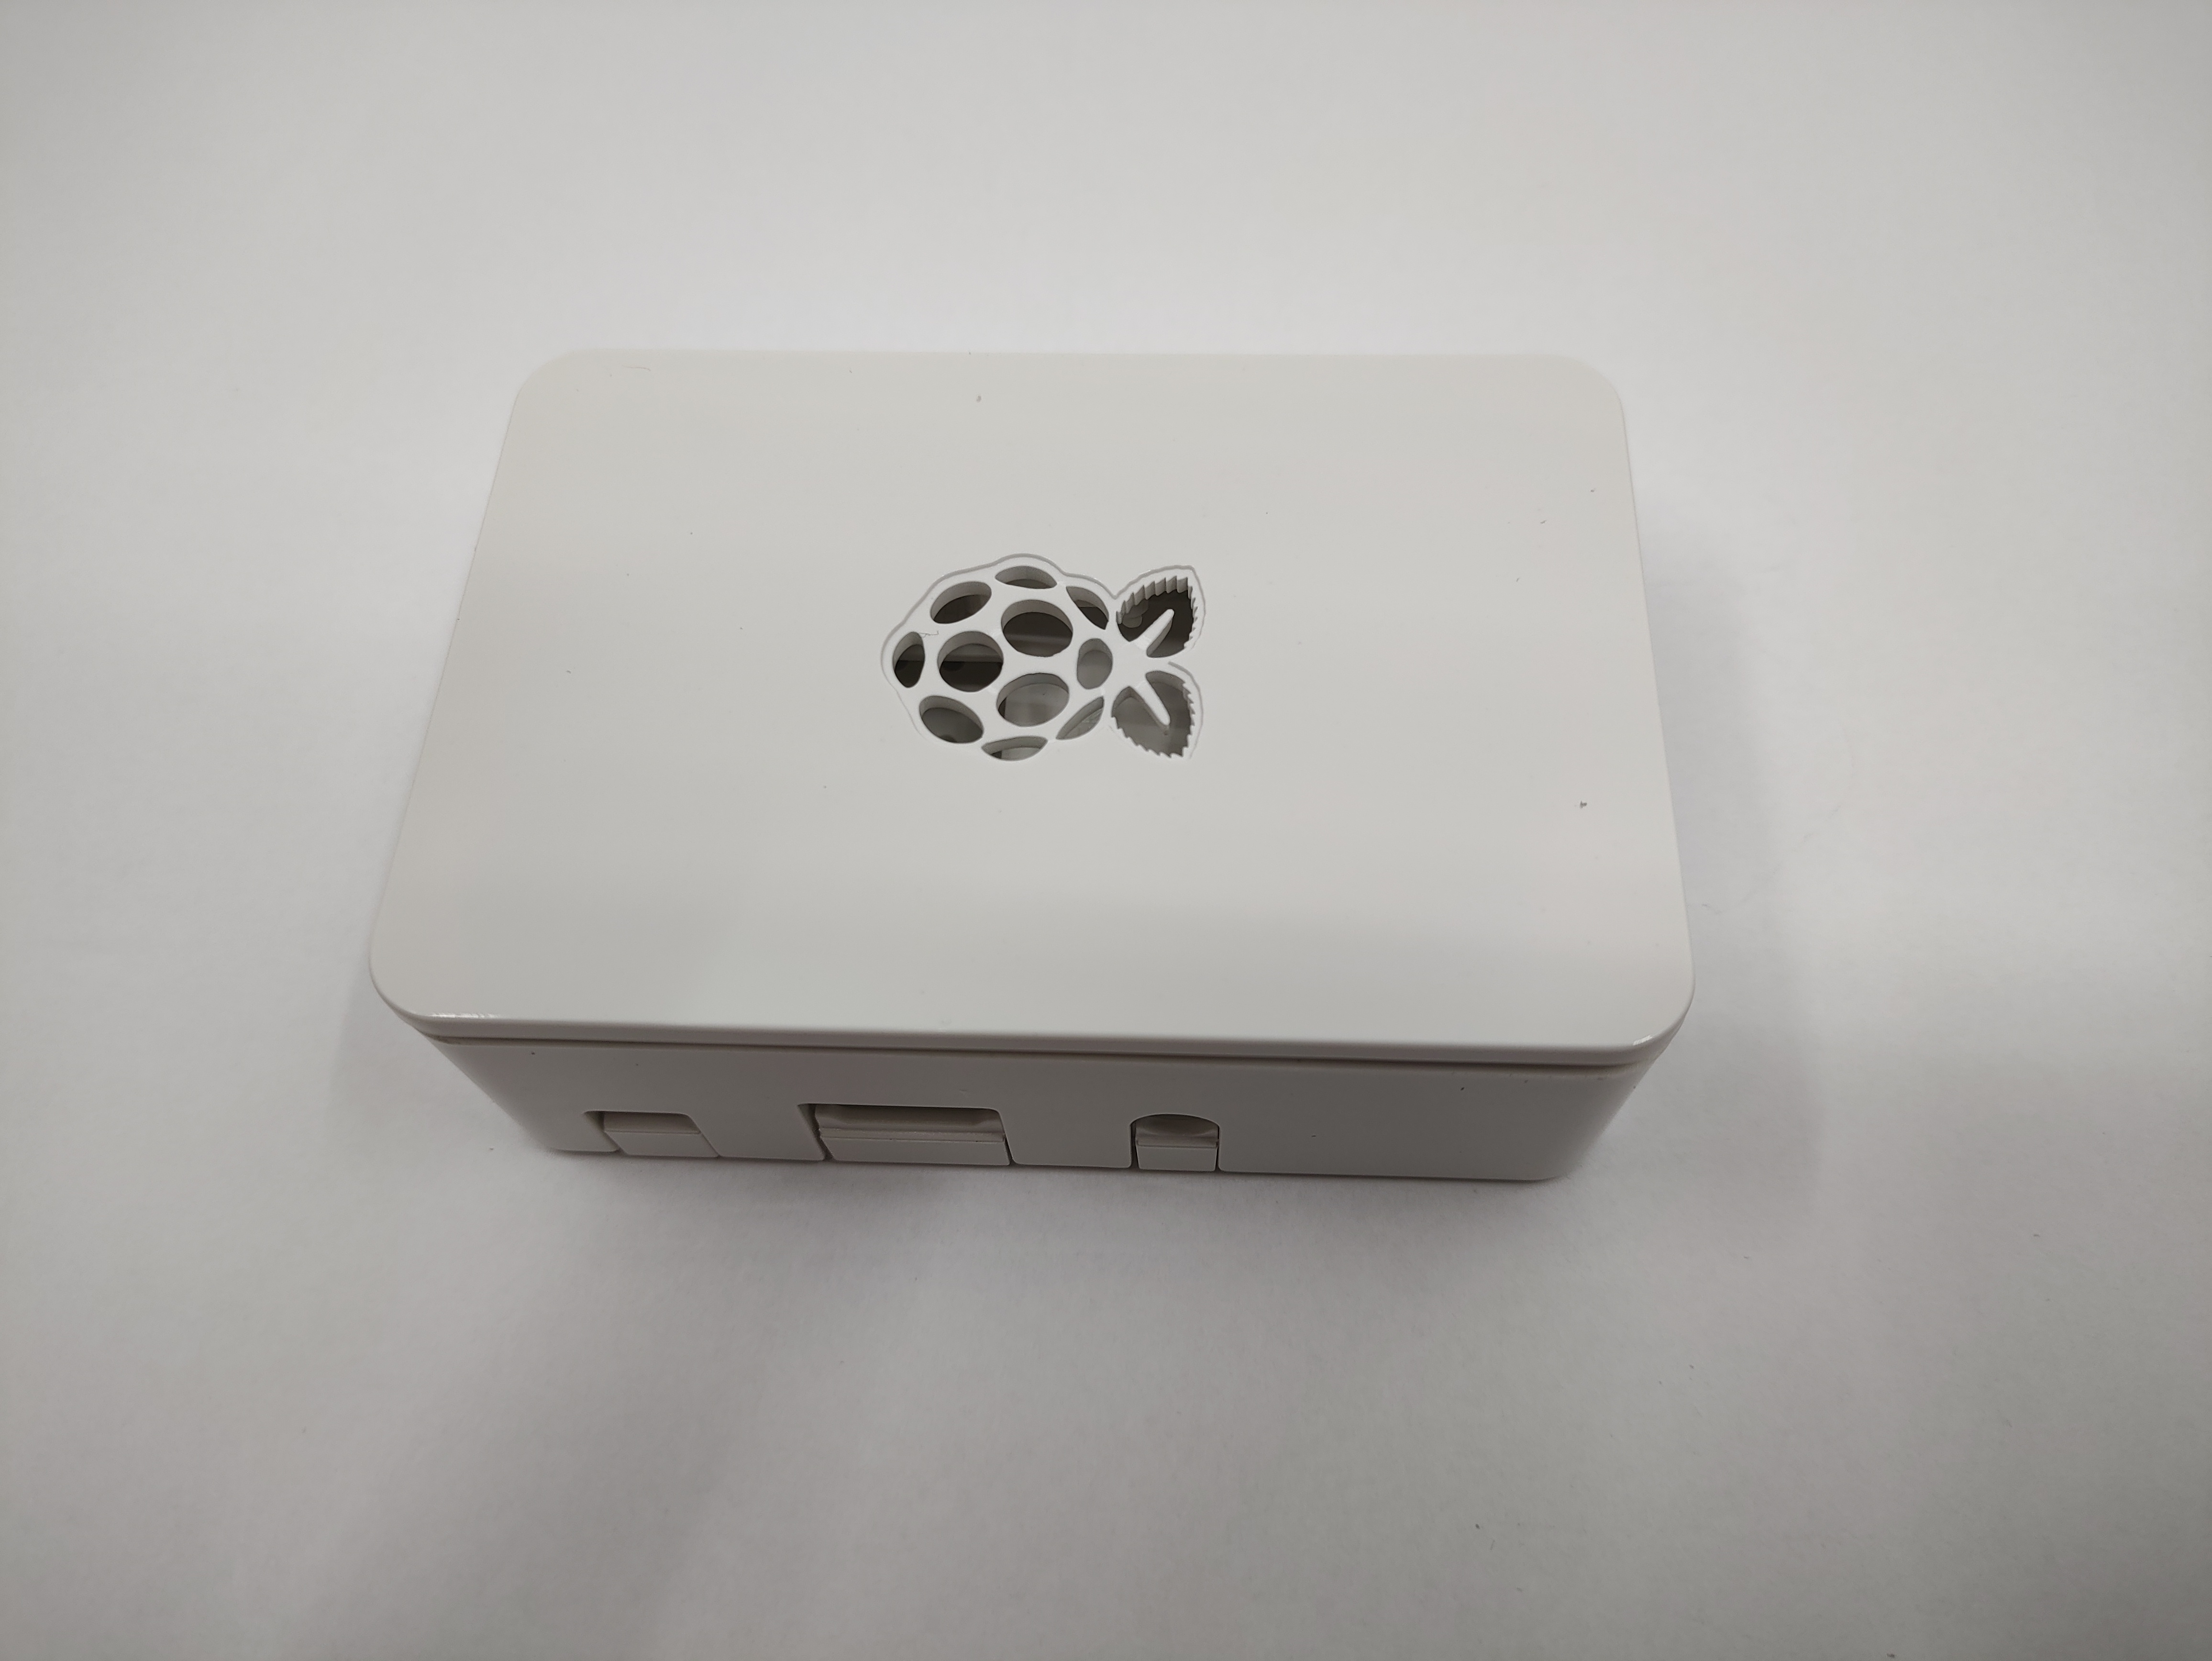 Raspberry Pi  3 Zubehör Set, Gehäuse + Netzteil + HDMI Kabel